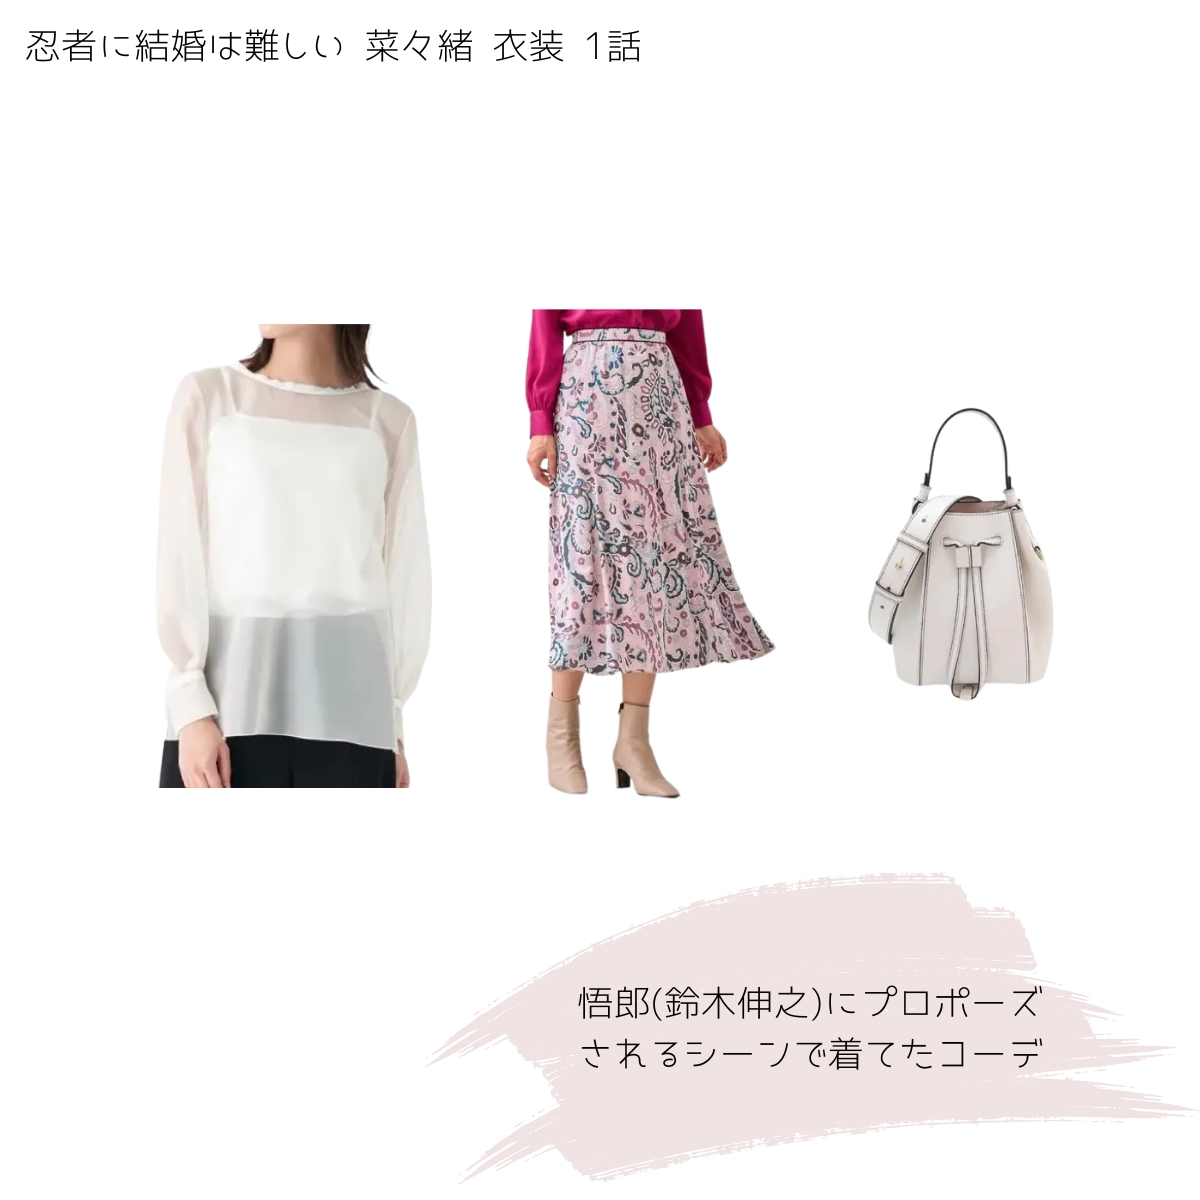 1話：悟郎(鈴木伸之)にプロポーズされるシーンで着てたコーデ《白いシアーブラウス・ピンクのペイズリー柄スカート・白い巾着バッグ》